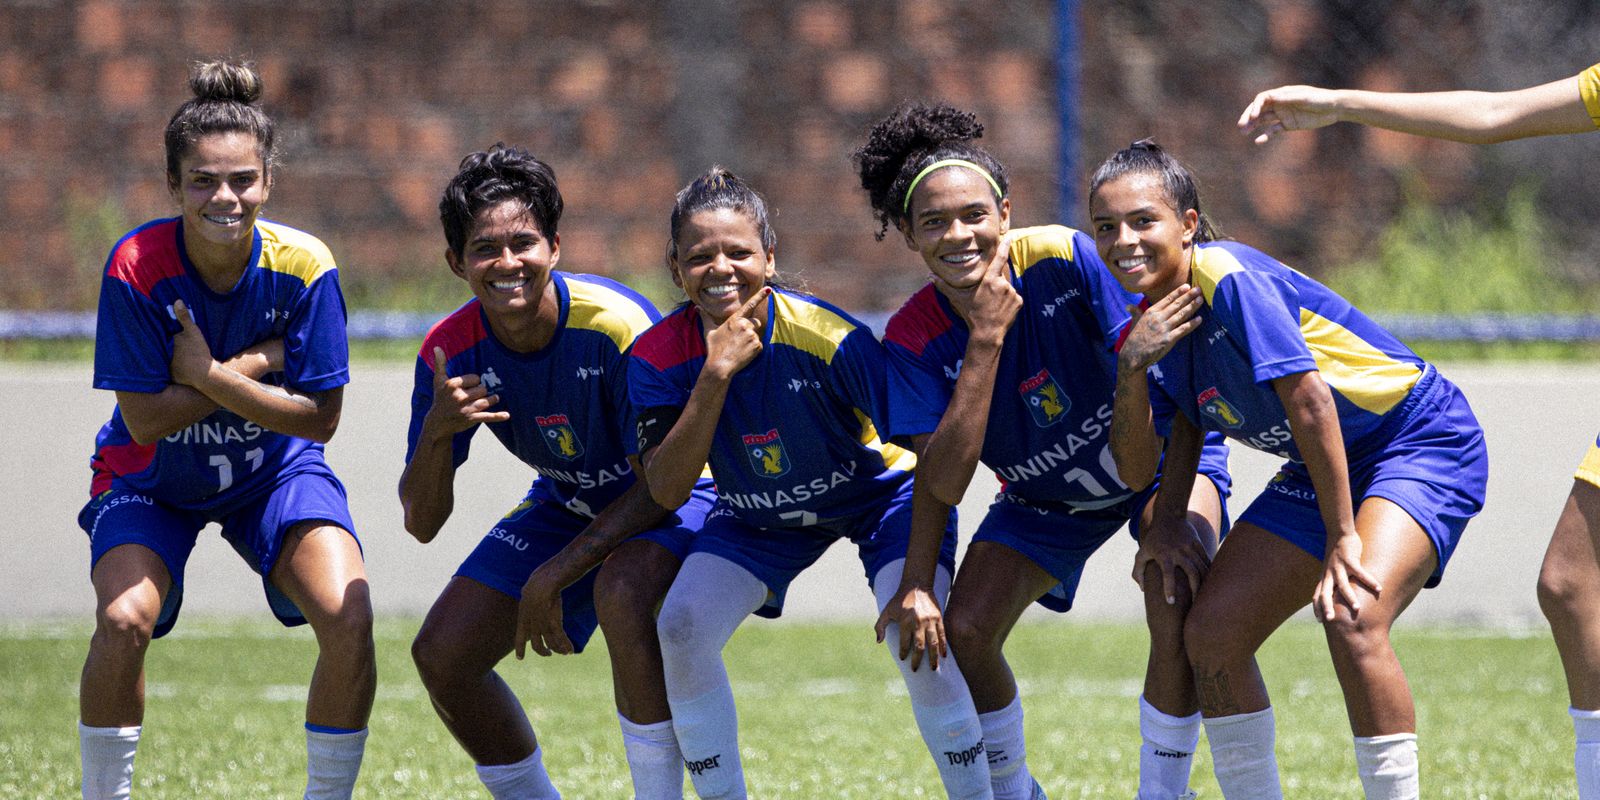 JUBs promovem maior participação feminina no futebol universitário